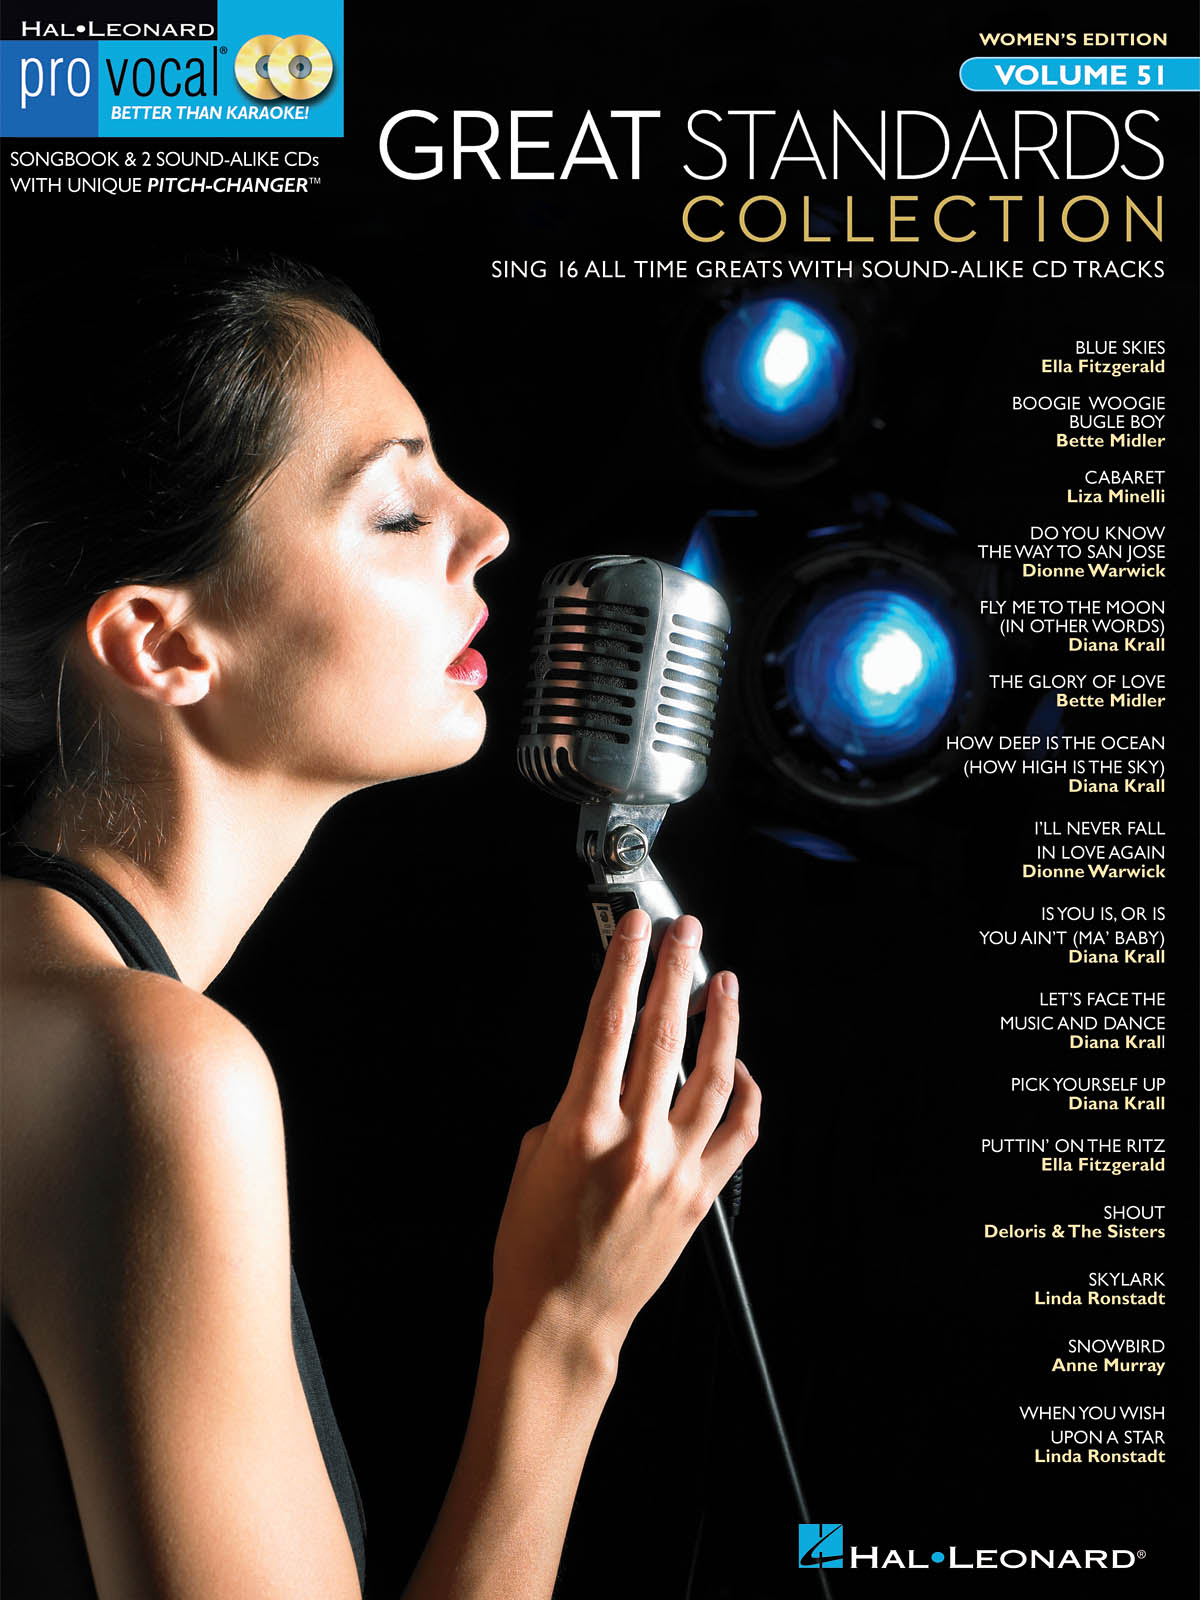 Great Standards Collection - Pro Vocal Women's Edition Volume 51 - písně pro zpěv, klavír s akordy pro kytaru